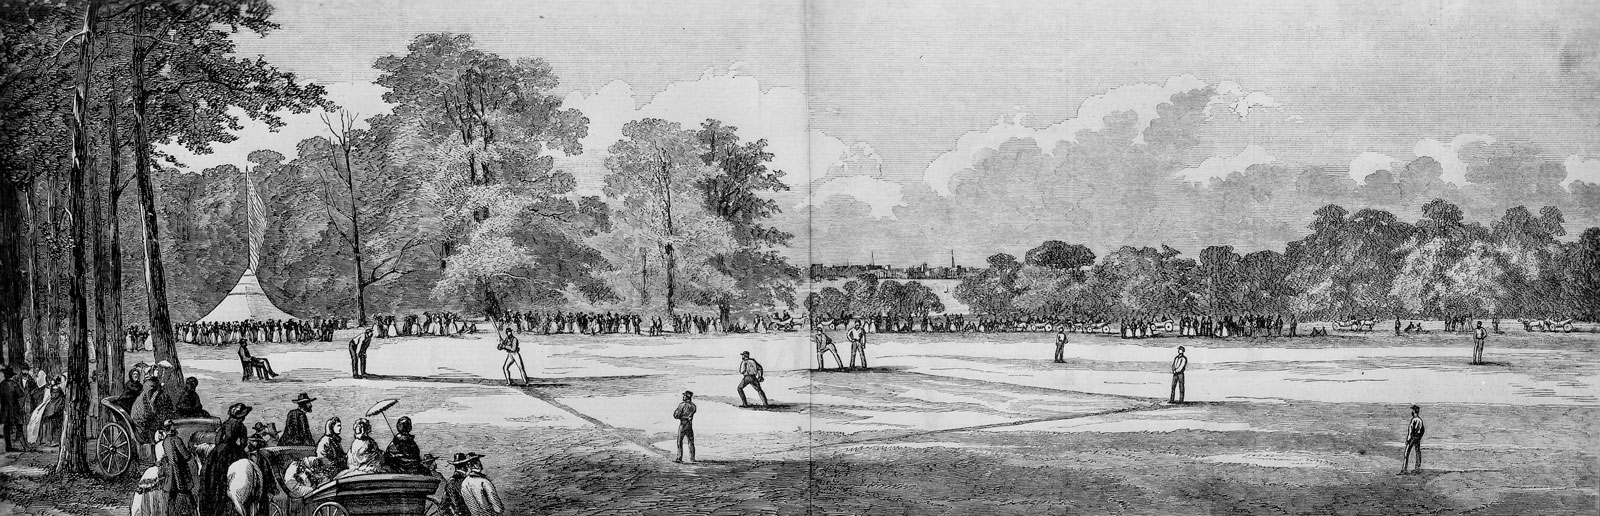 baseball-game-Hoboken-Elysian-Fields-New-Jersey-1859.jpg